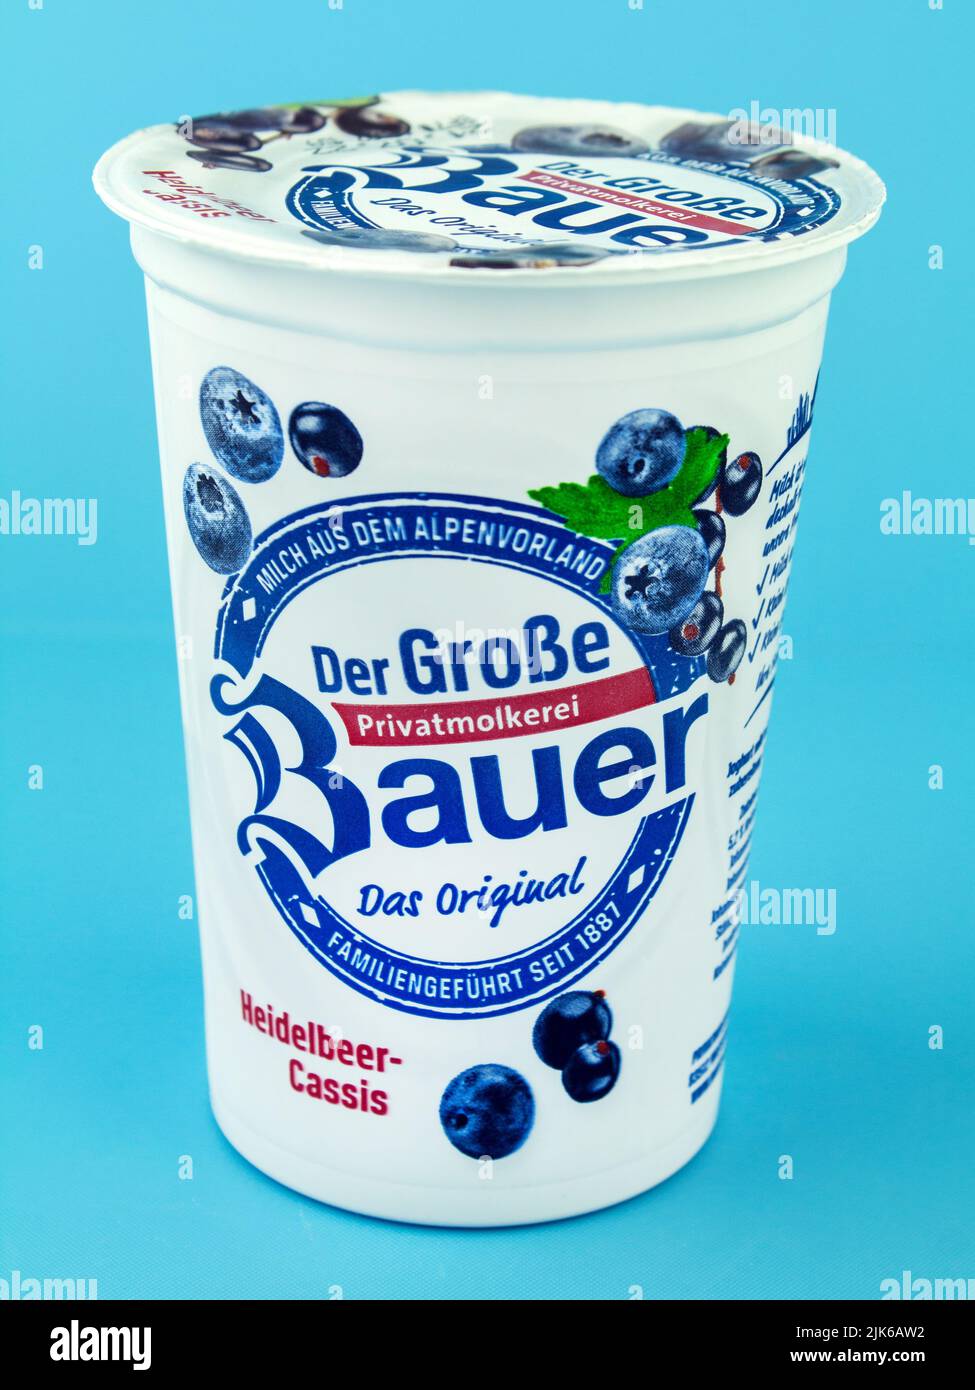 Hamburg, Deutschland - Juli 31 2022: Bauer Heidelbeer, Classik Jogurt auf blauem Hintergrund - Bauer Blueberry, Classik Joghurt auf blauem Hintergrund Stockfoto